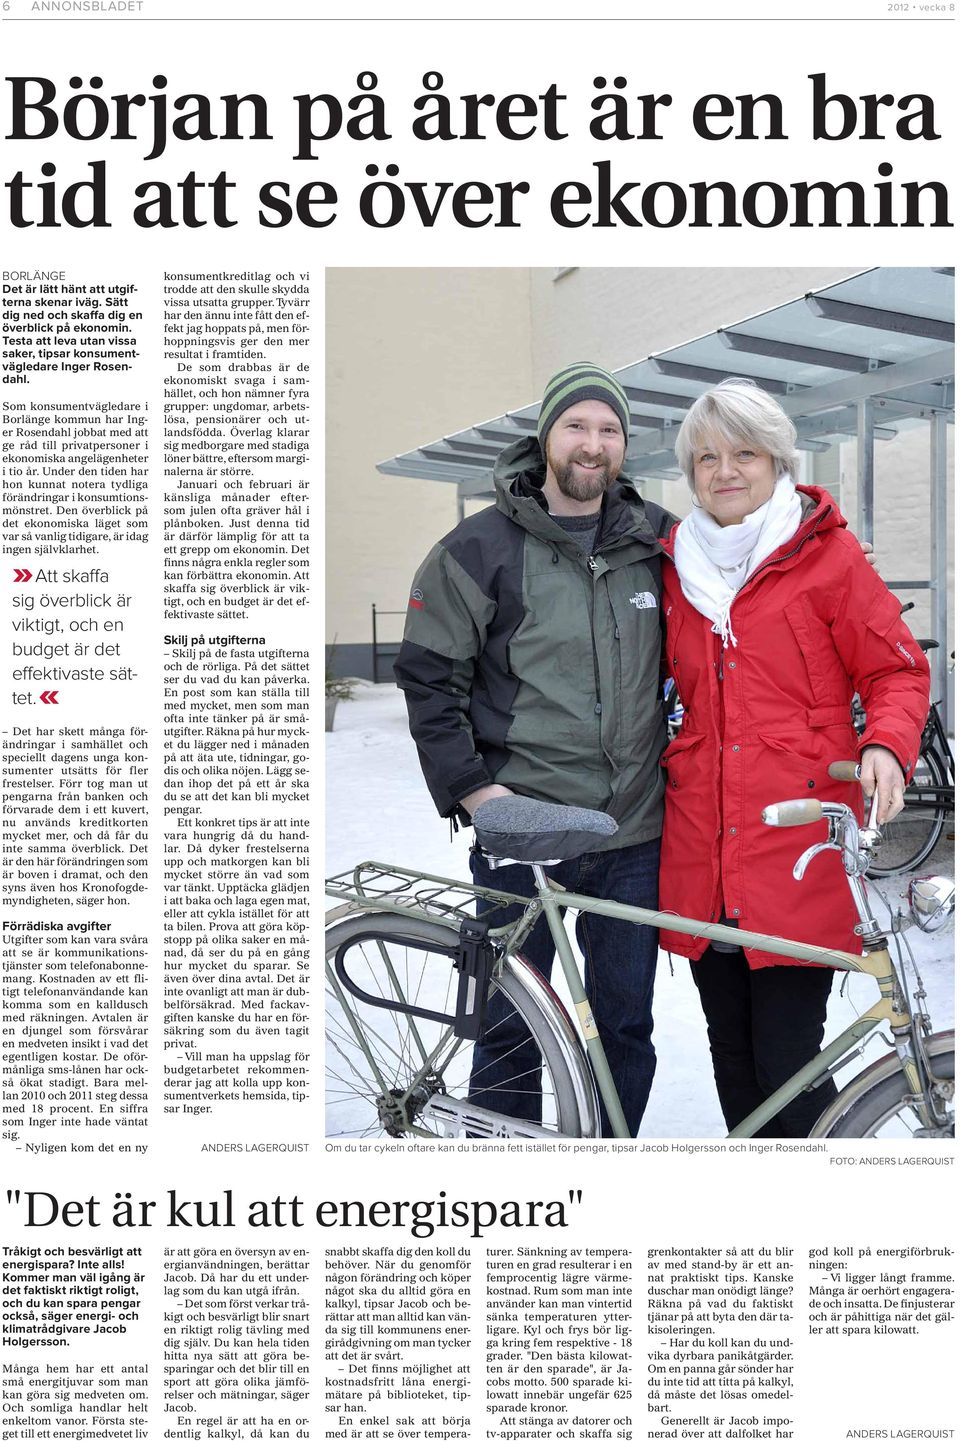 Som konsumentvägledare i Borlänge kommun har Inger Rosendahl jobbat med att ge råd till privatpersoner i ekonomiska angelägenheter i tio år.